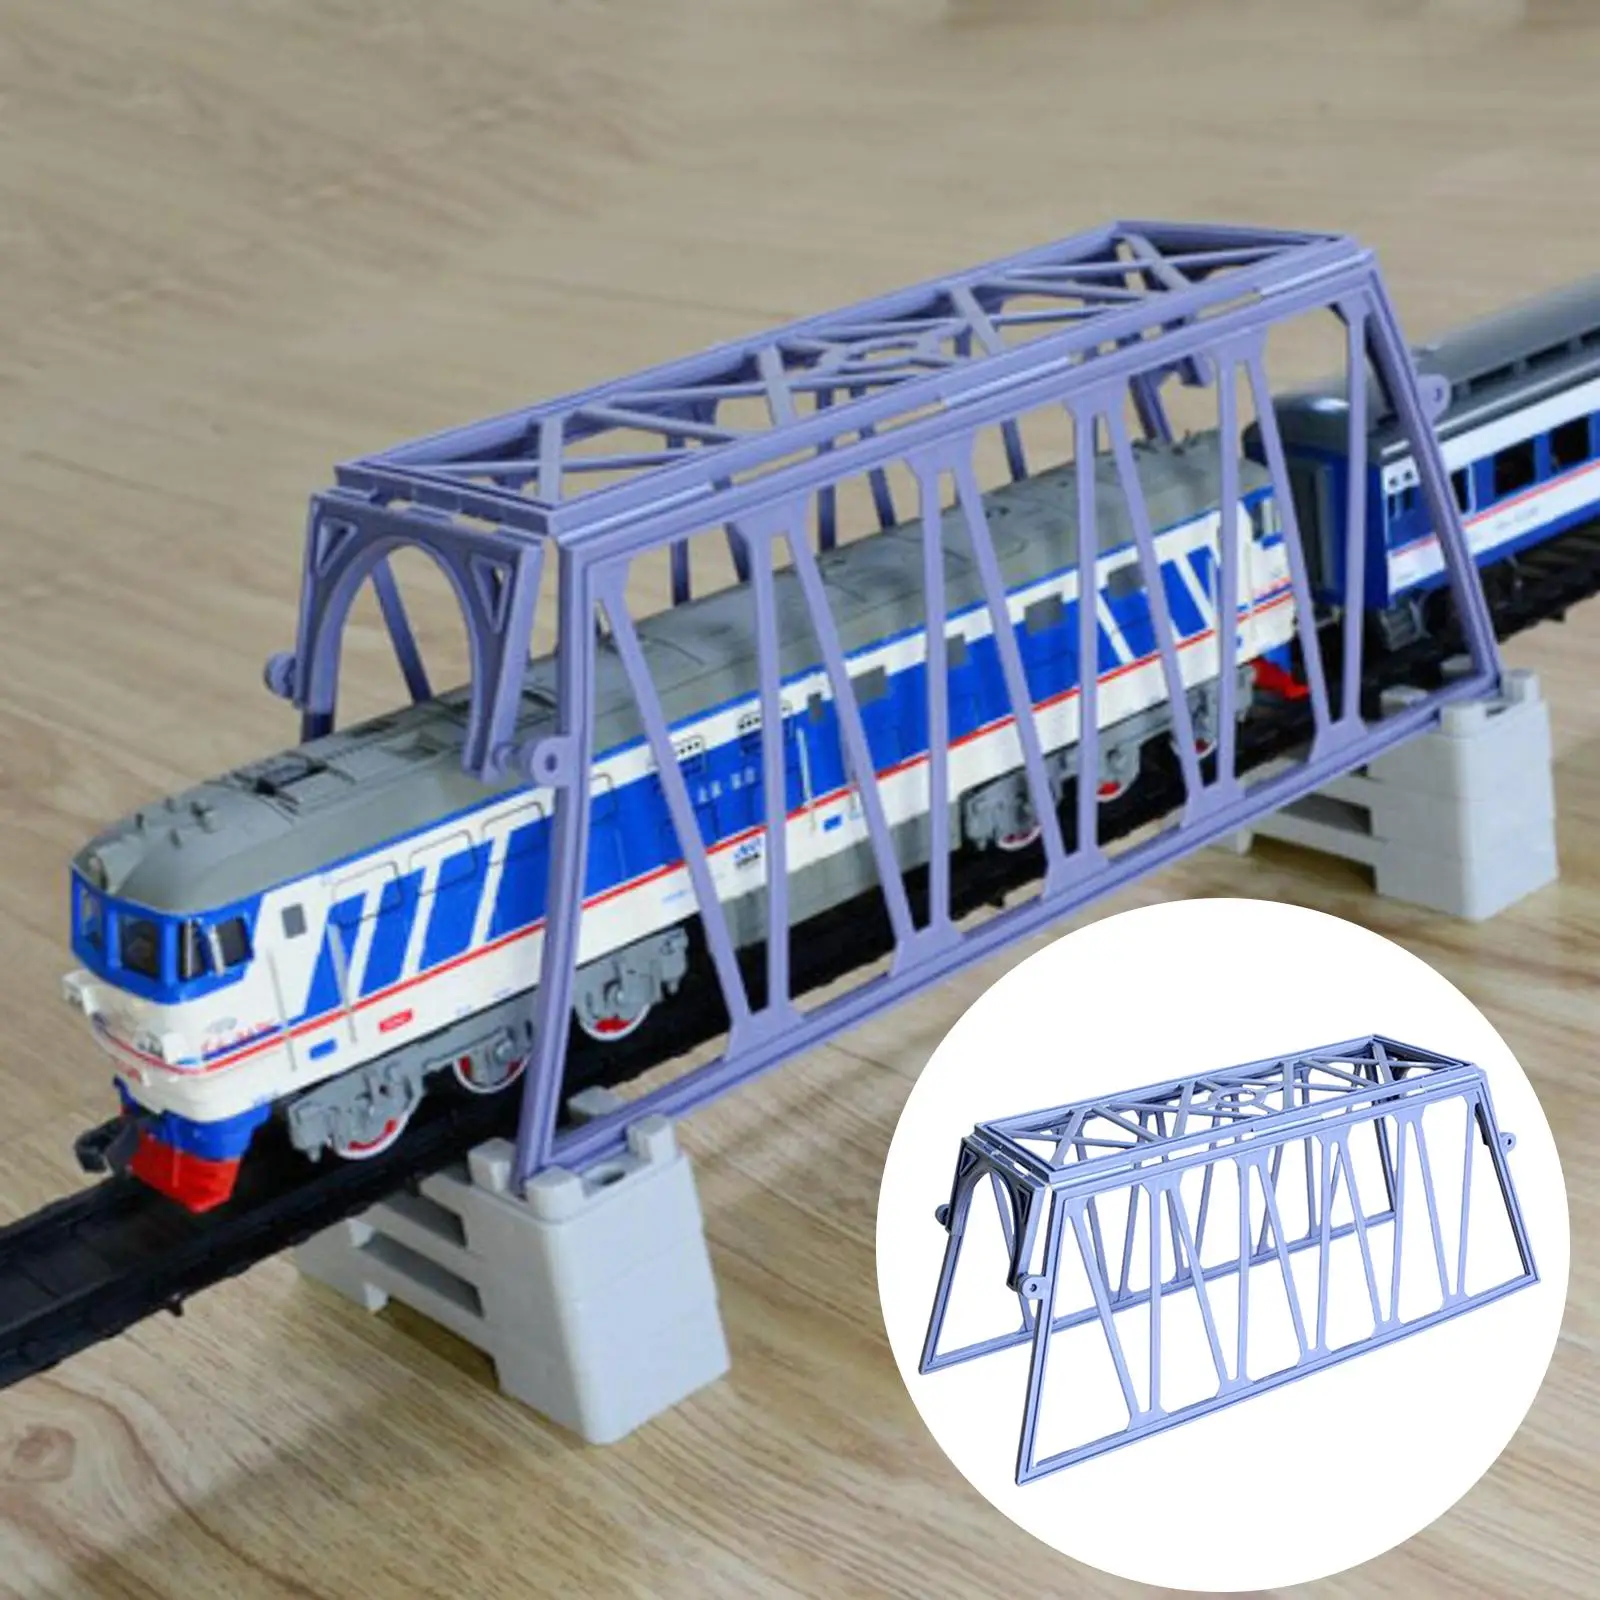 Bridge Network Model Boys Toy Train Railroad Scenery Building Kit Rail Scenario Accessories for Miniature Scene Dollhouse Decor